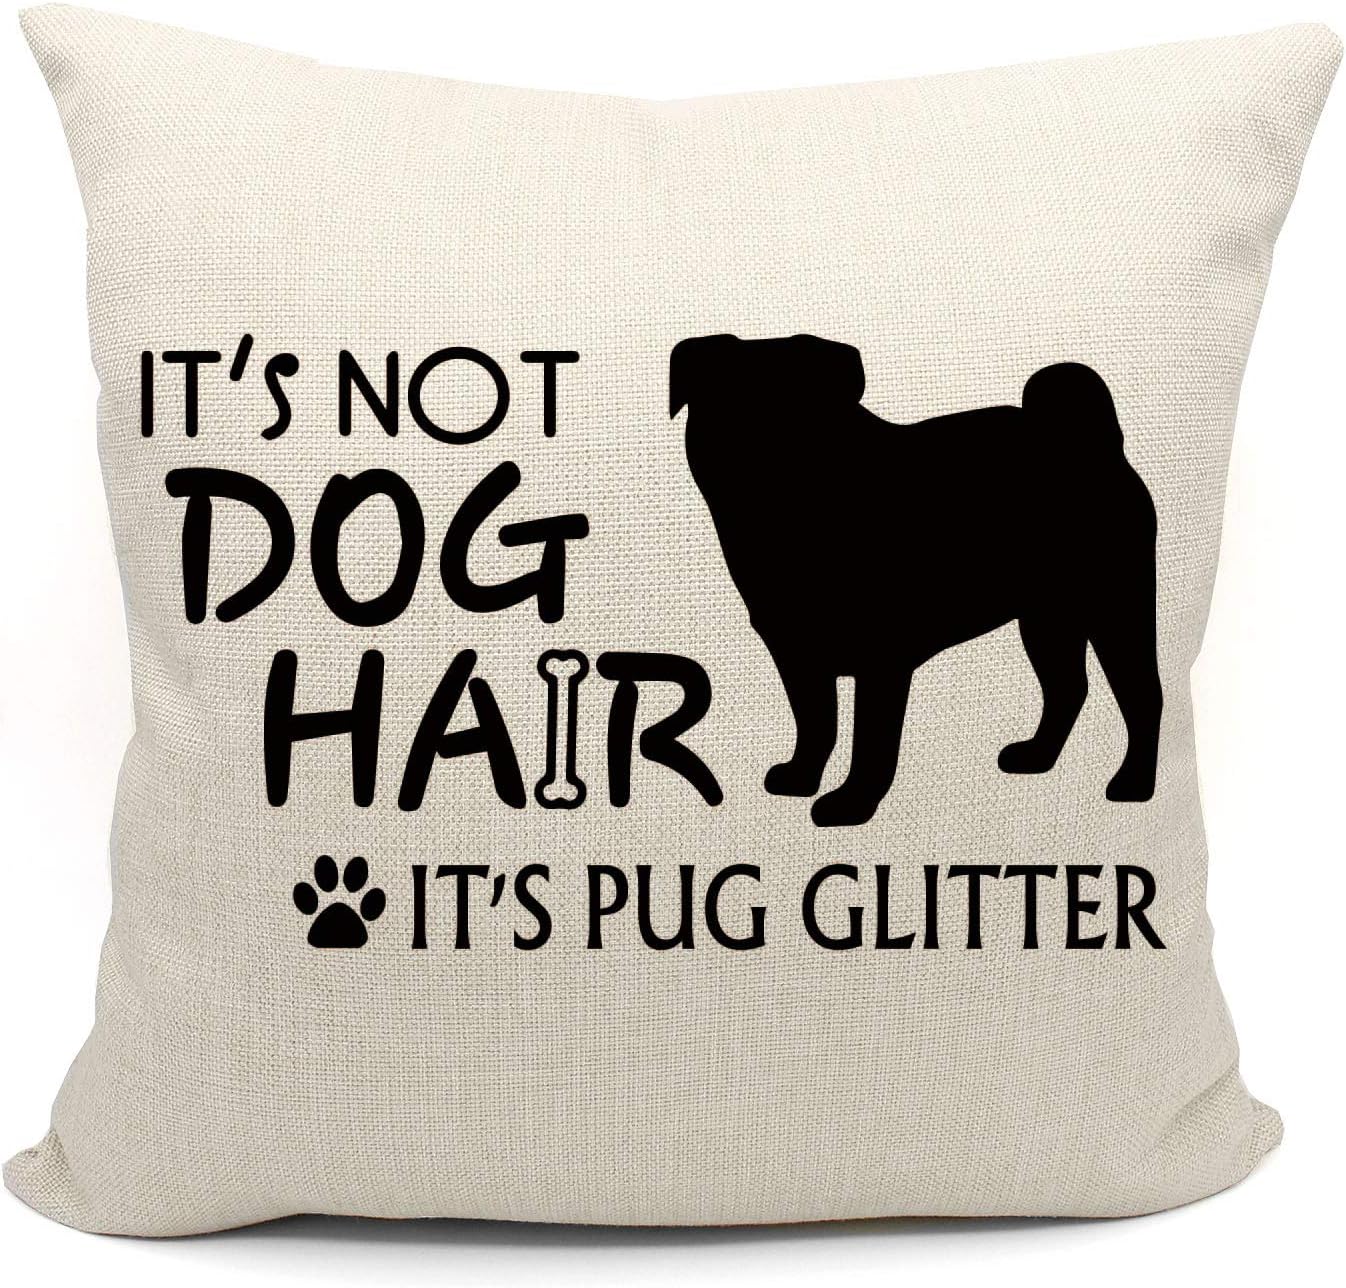 18 X 18 It's Not Dog Hair, It's Pug Glitter Pillow